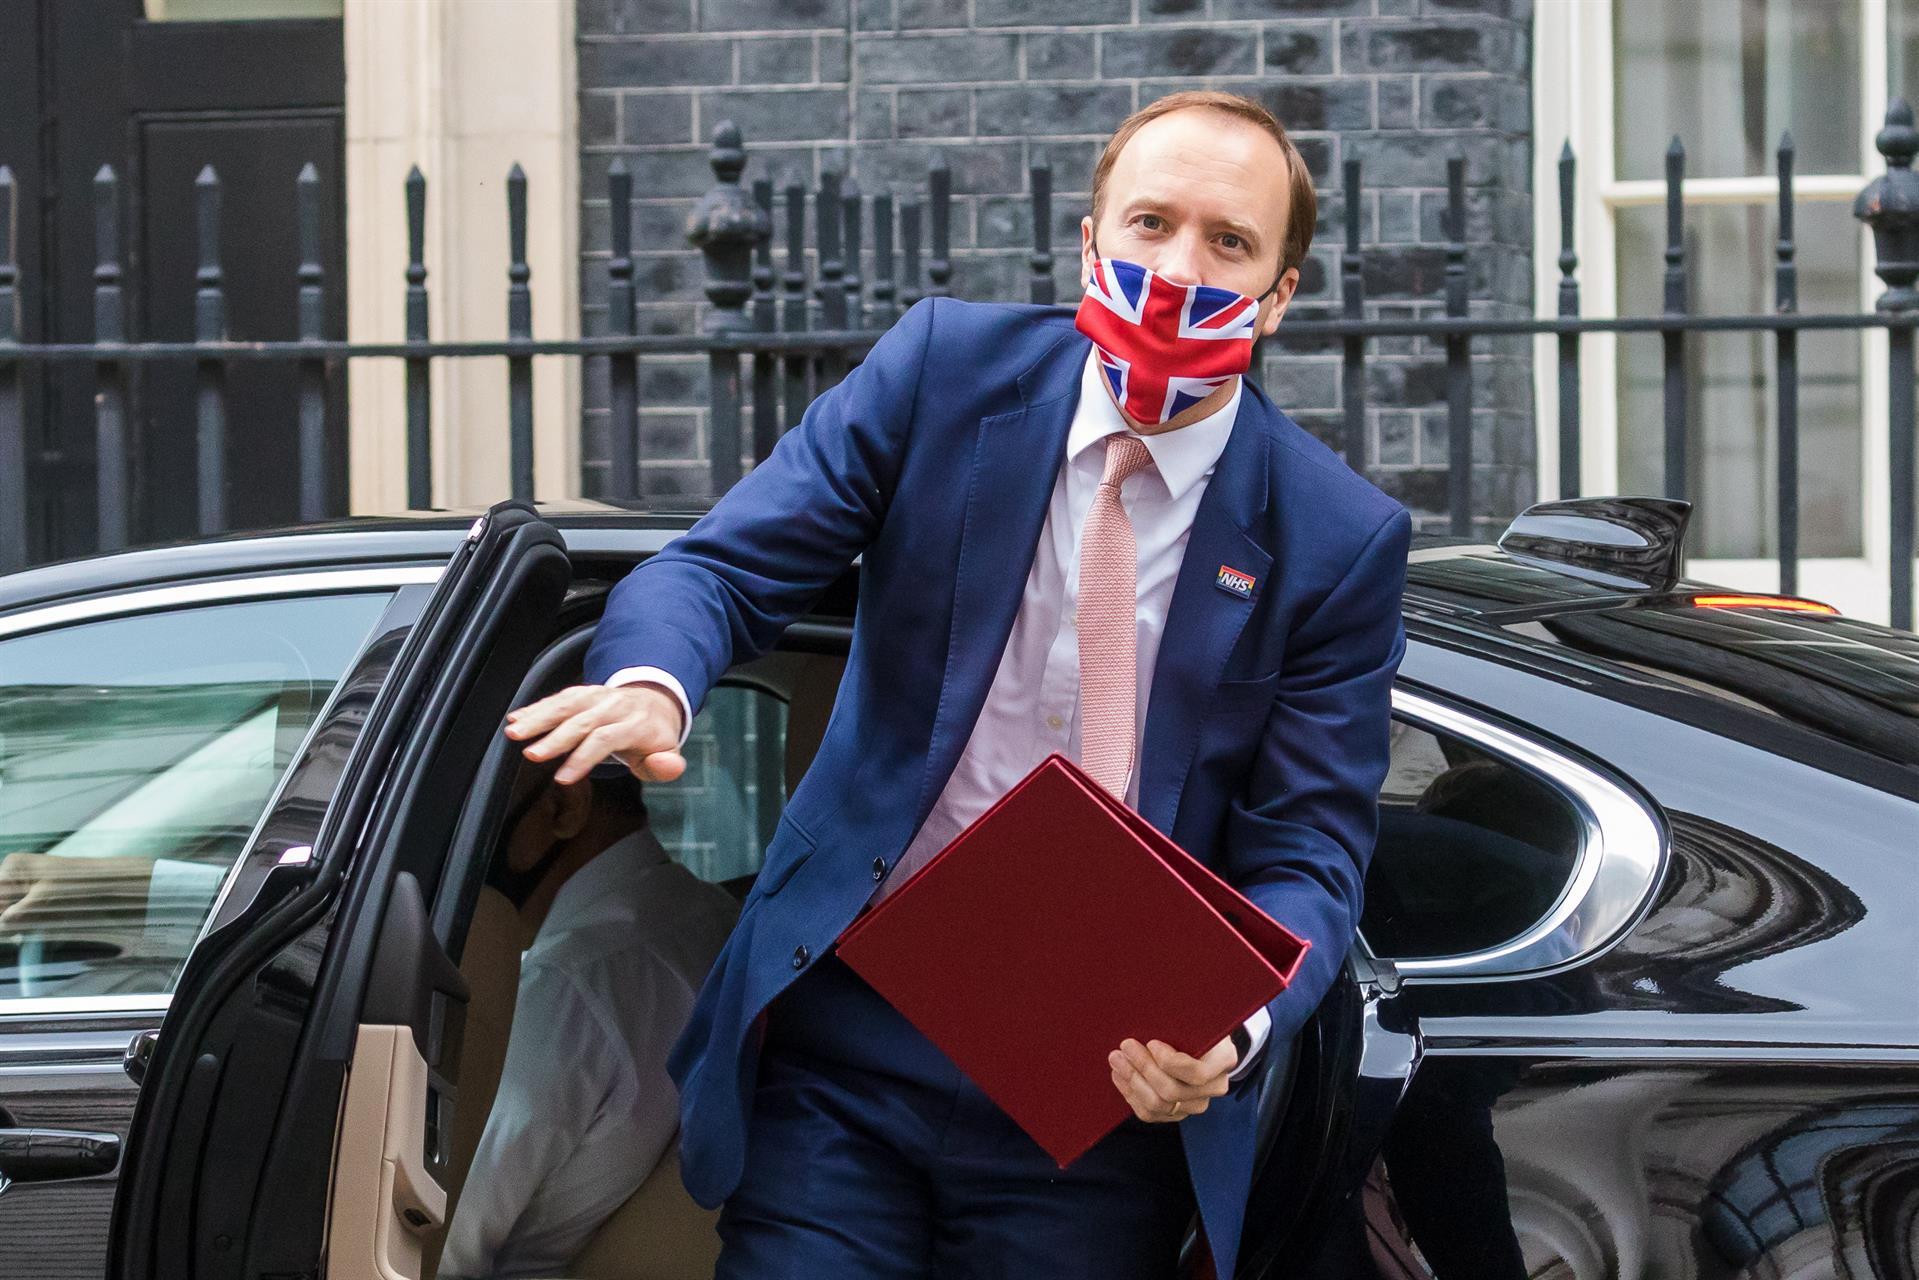 Por fotos violando reglas anti Covid-19, renuncia ministro de salud británico